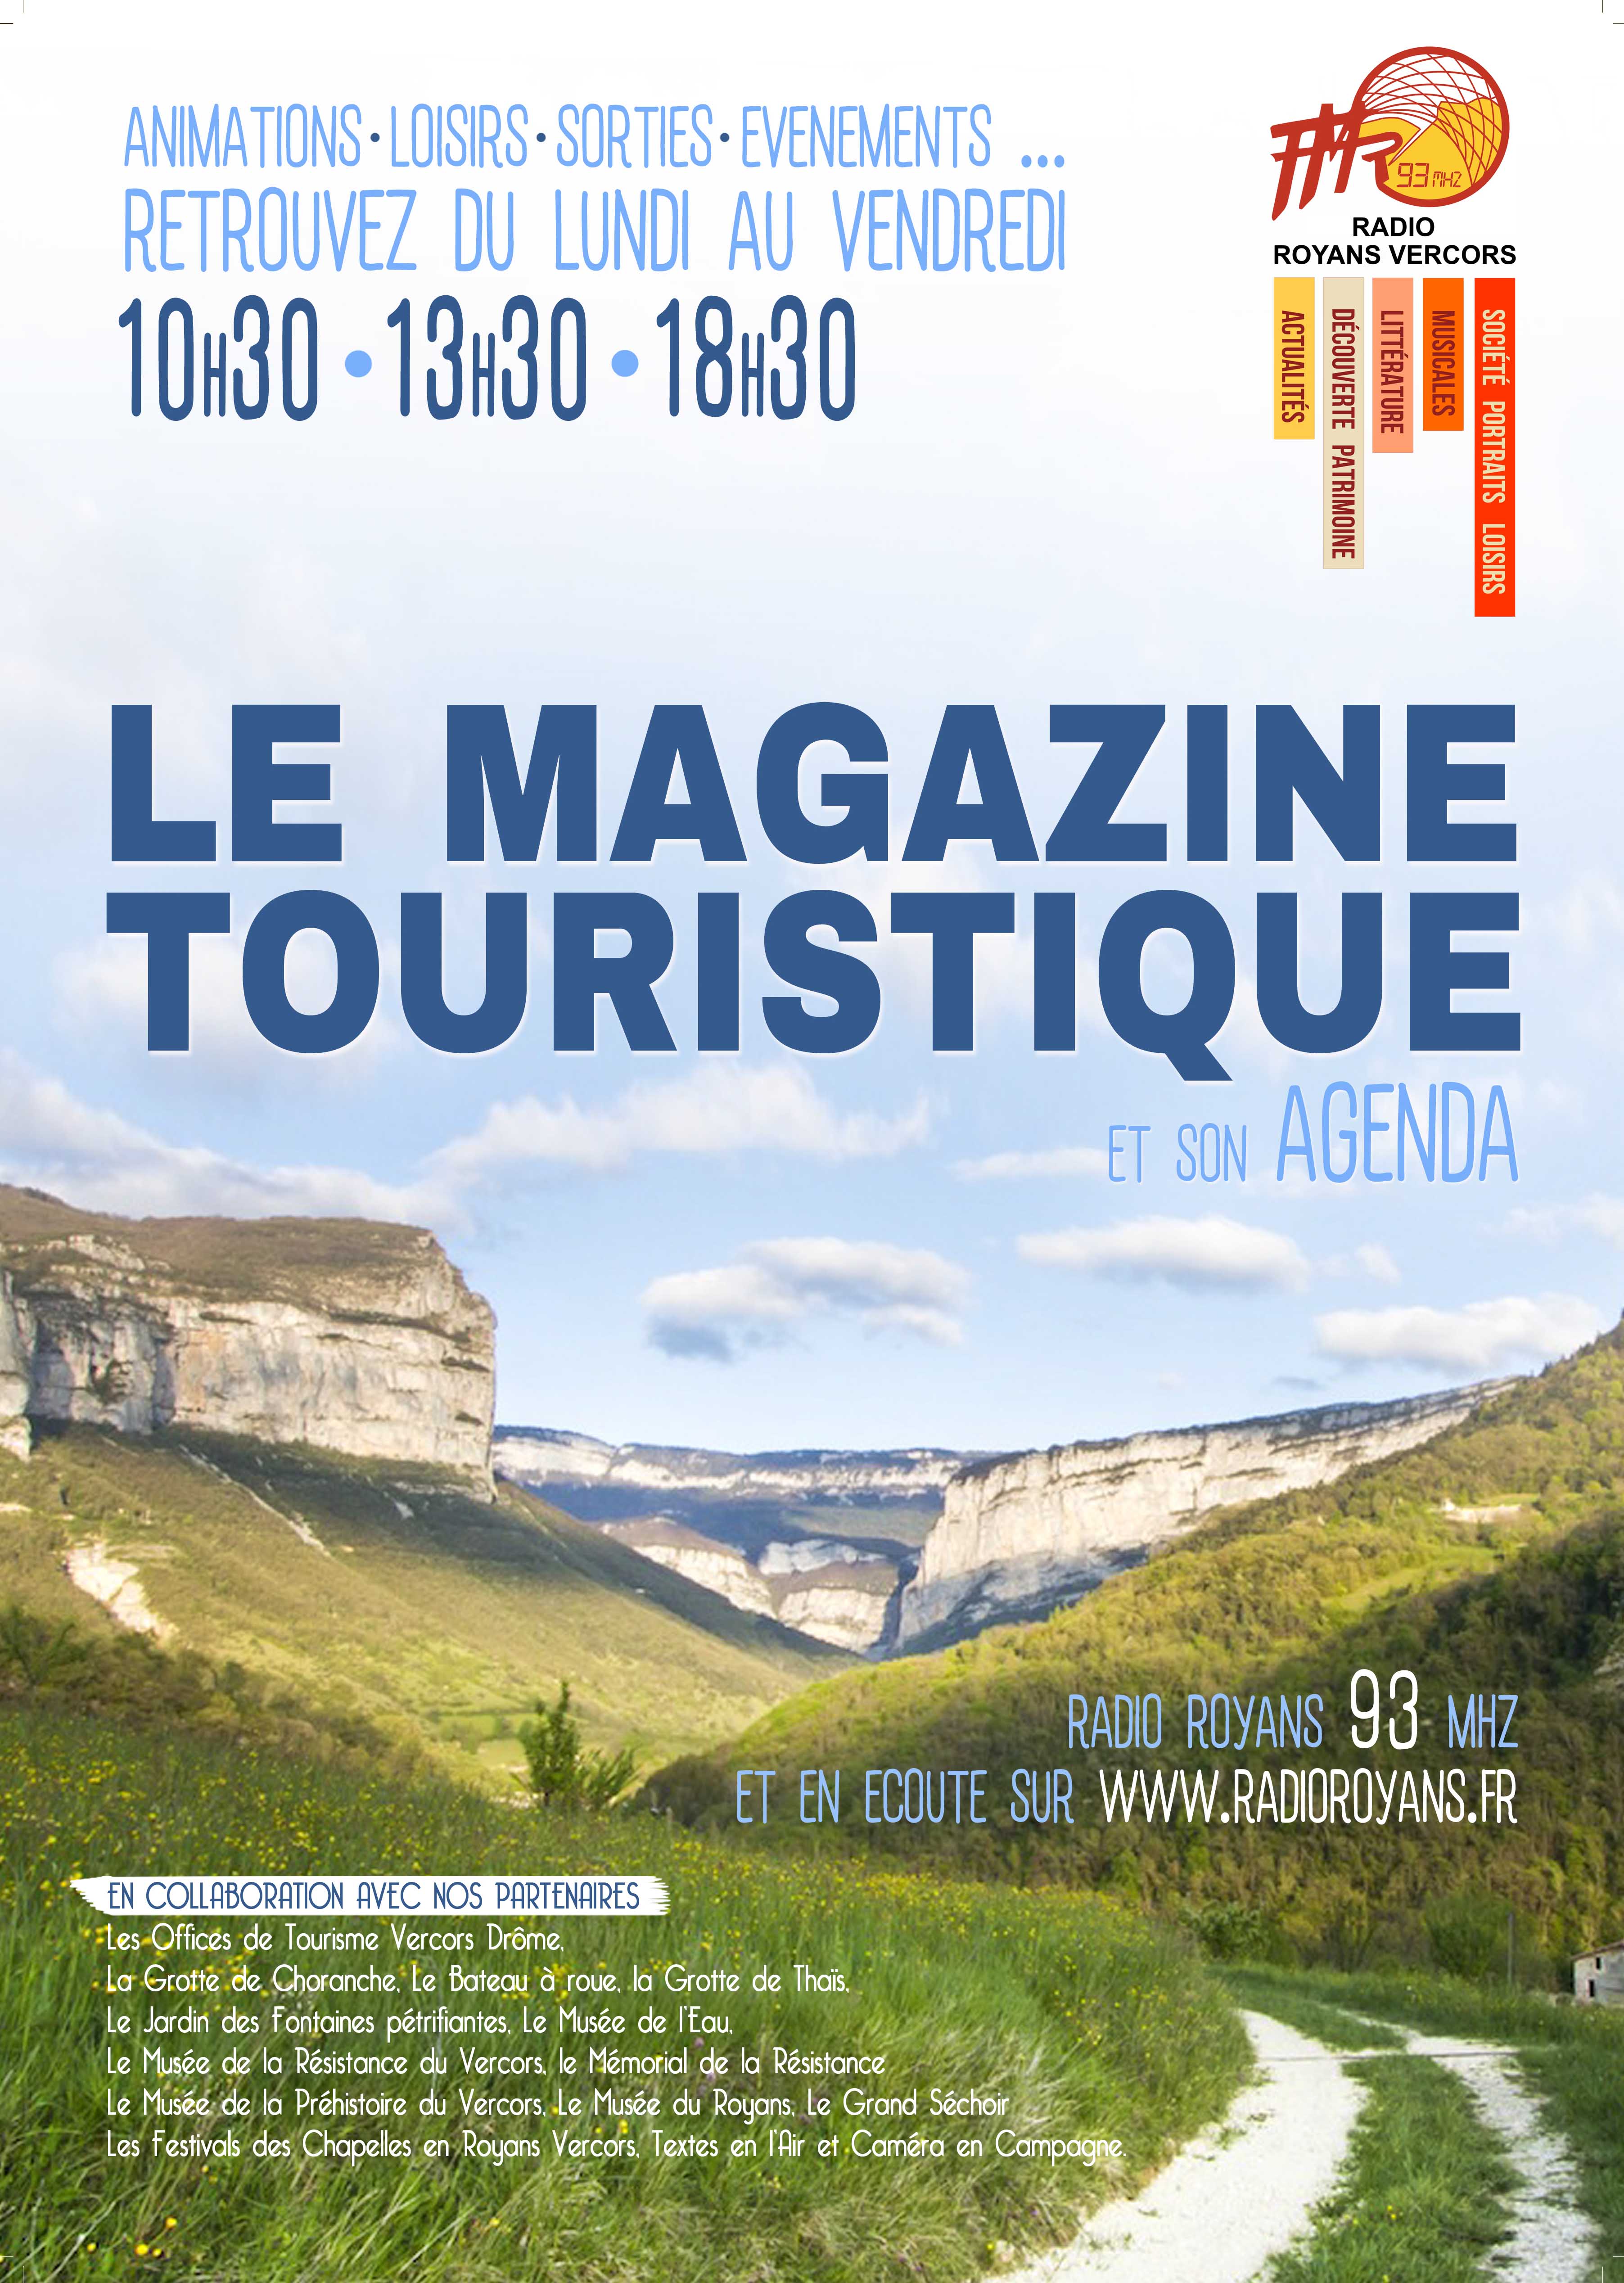 Le magazine touristique